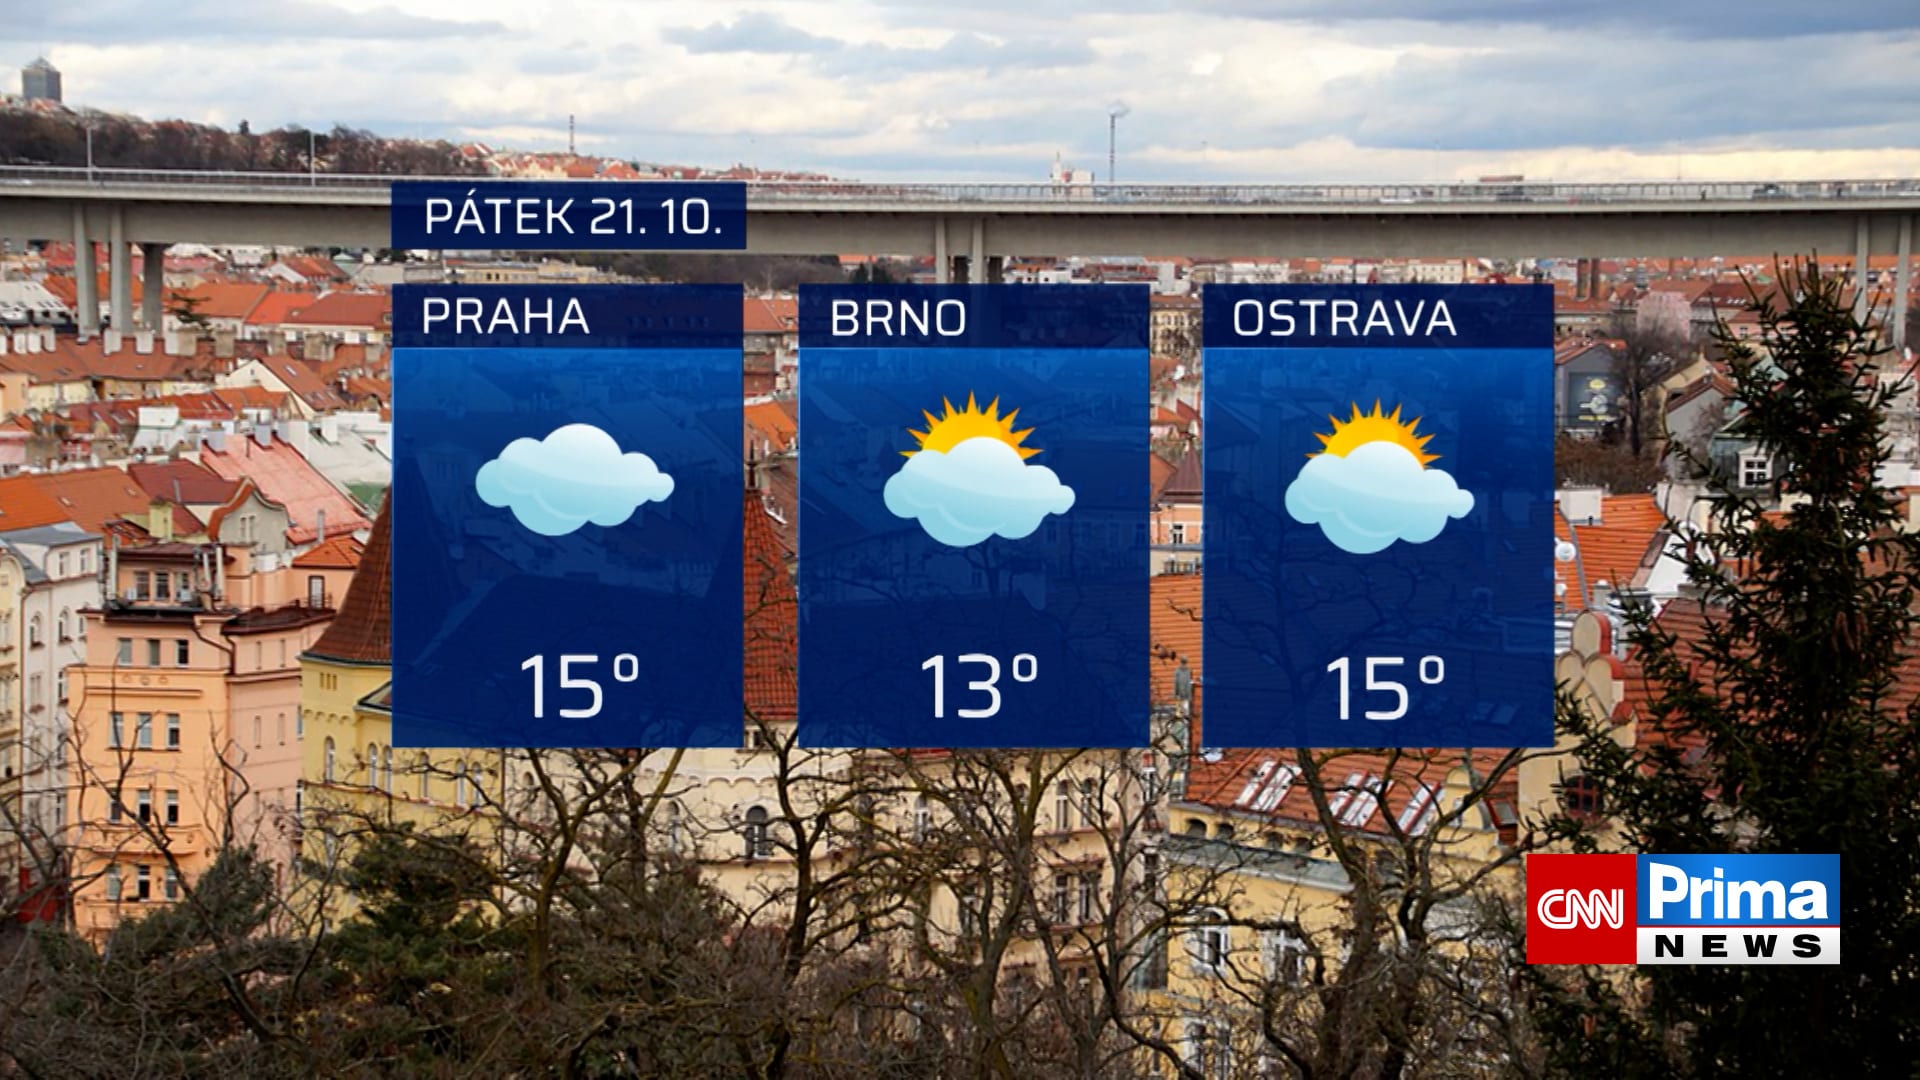 Předpověď počasí v Praze, Brně a Ostravě